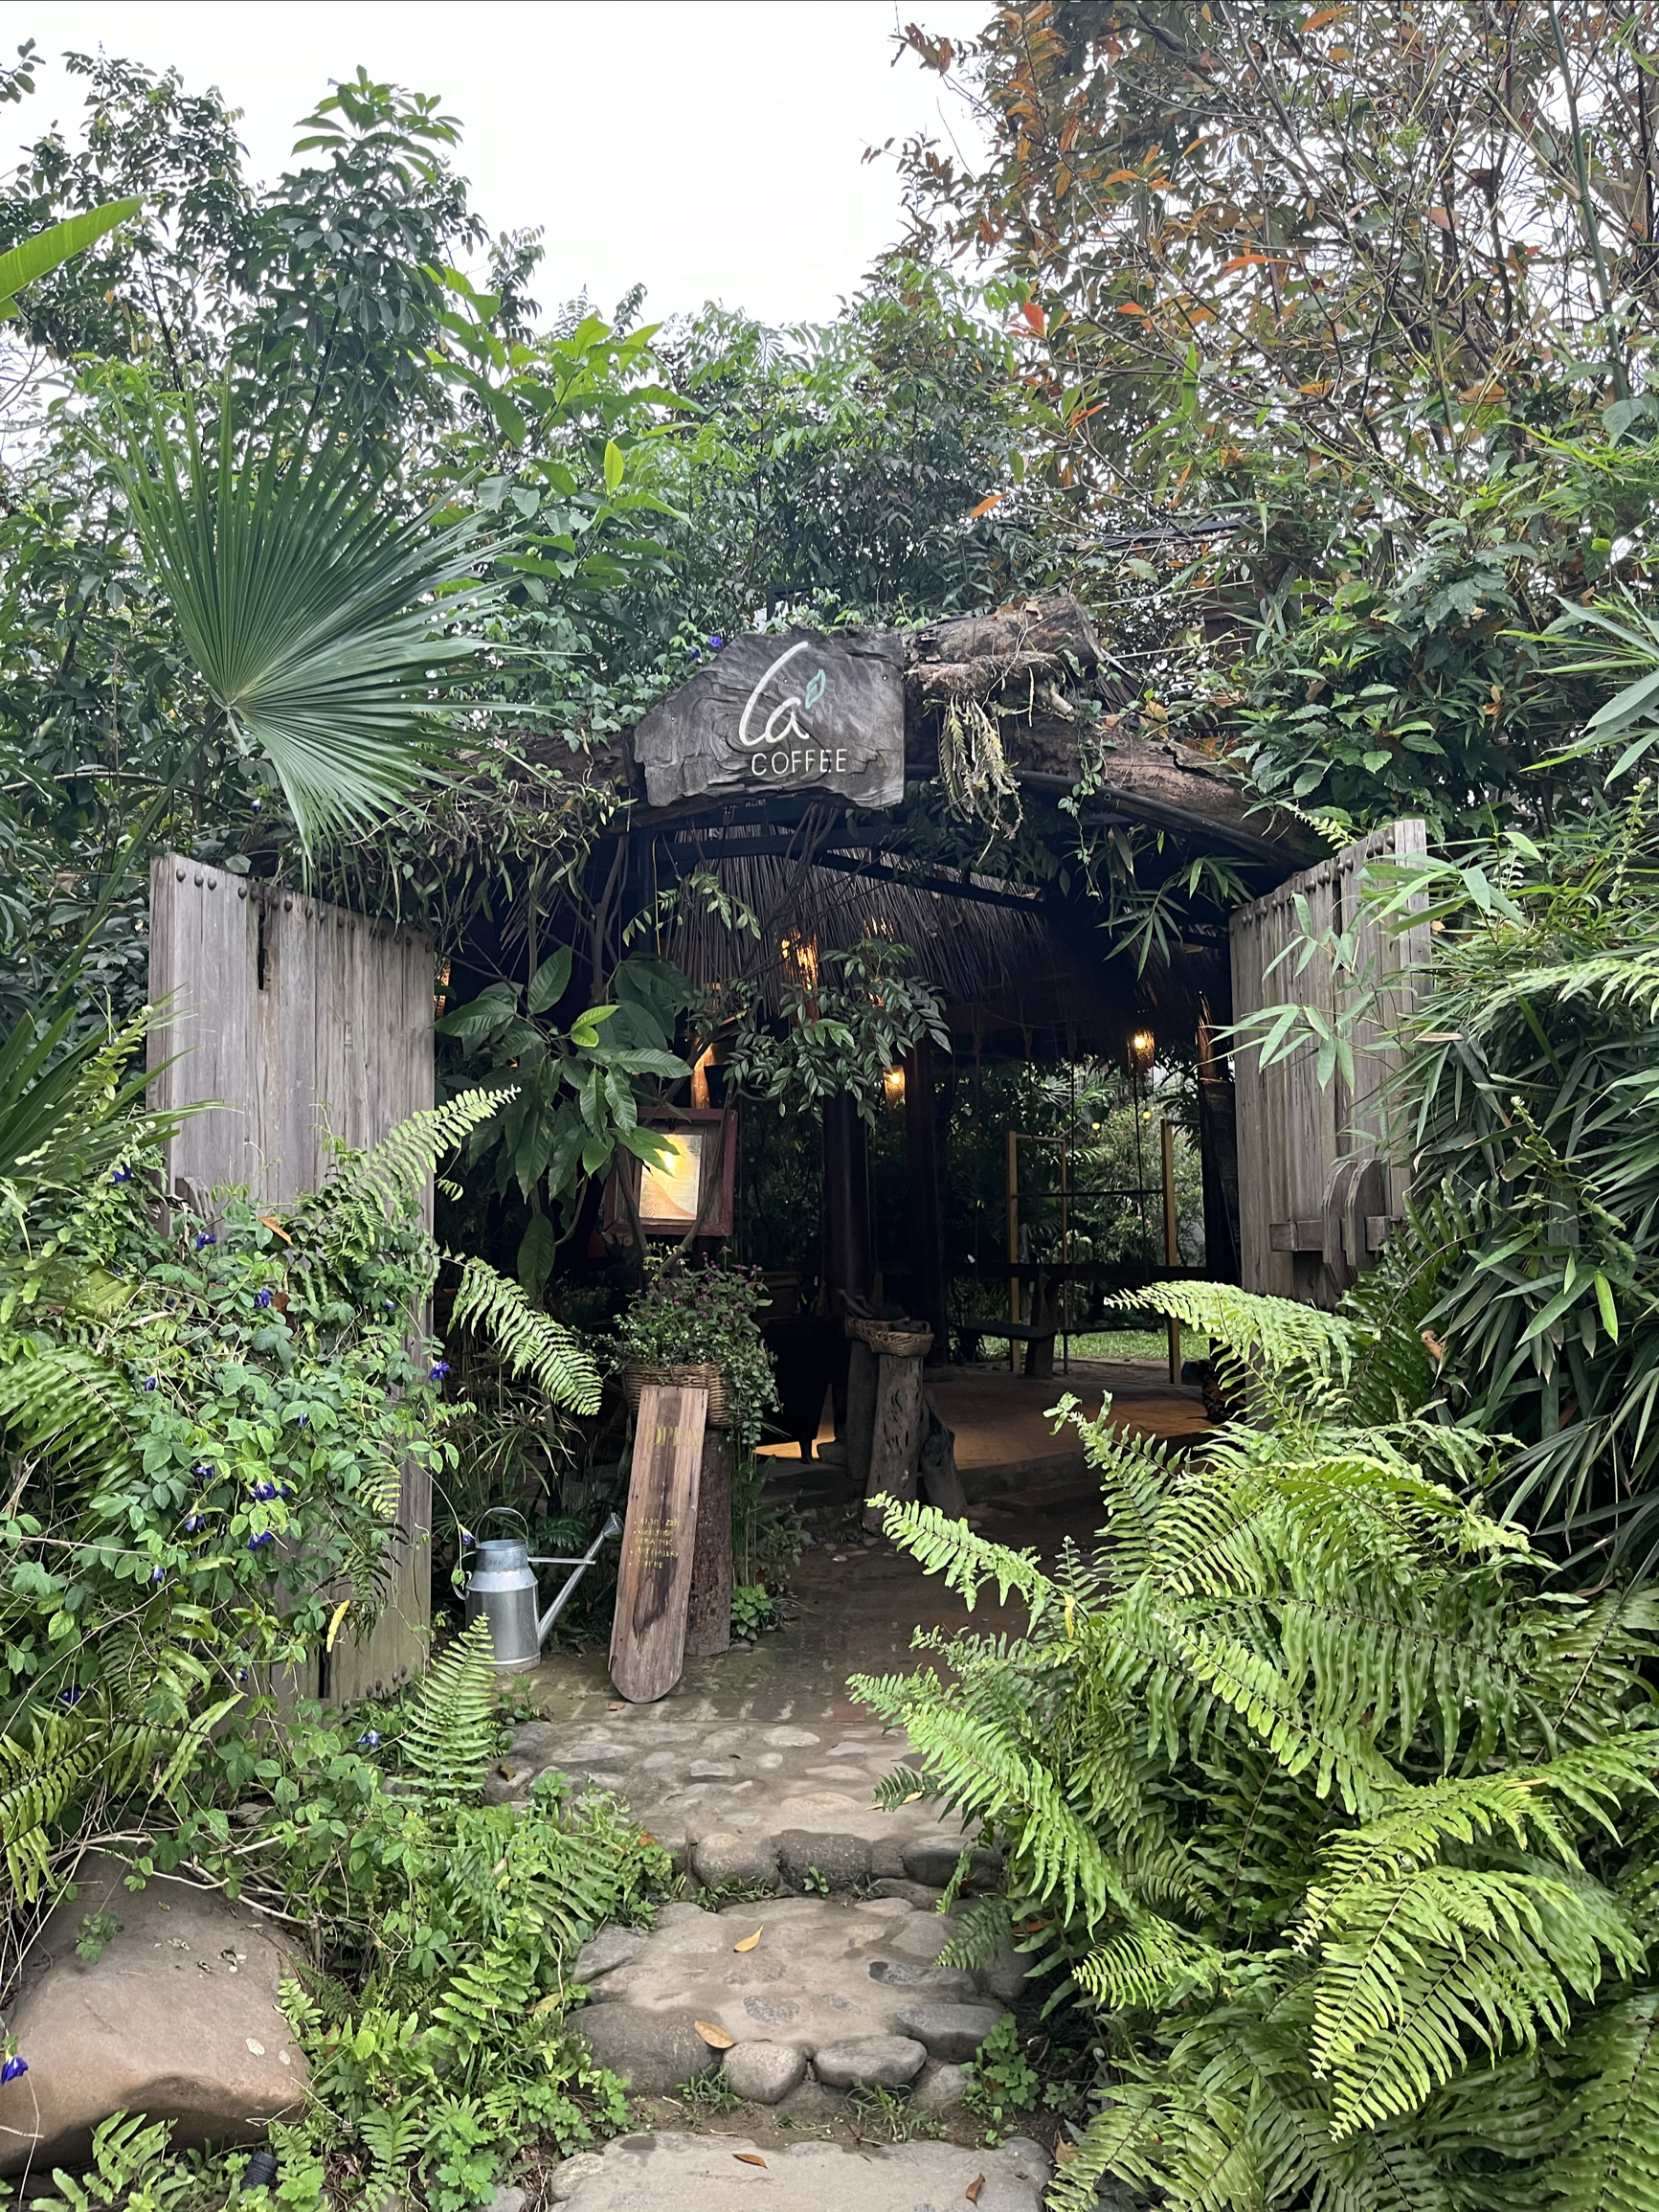 Lá cà phê雨林中的咖啡店